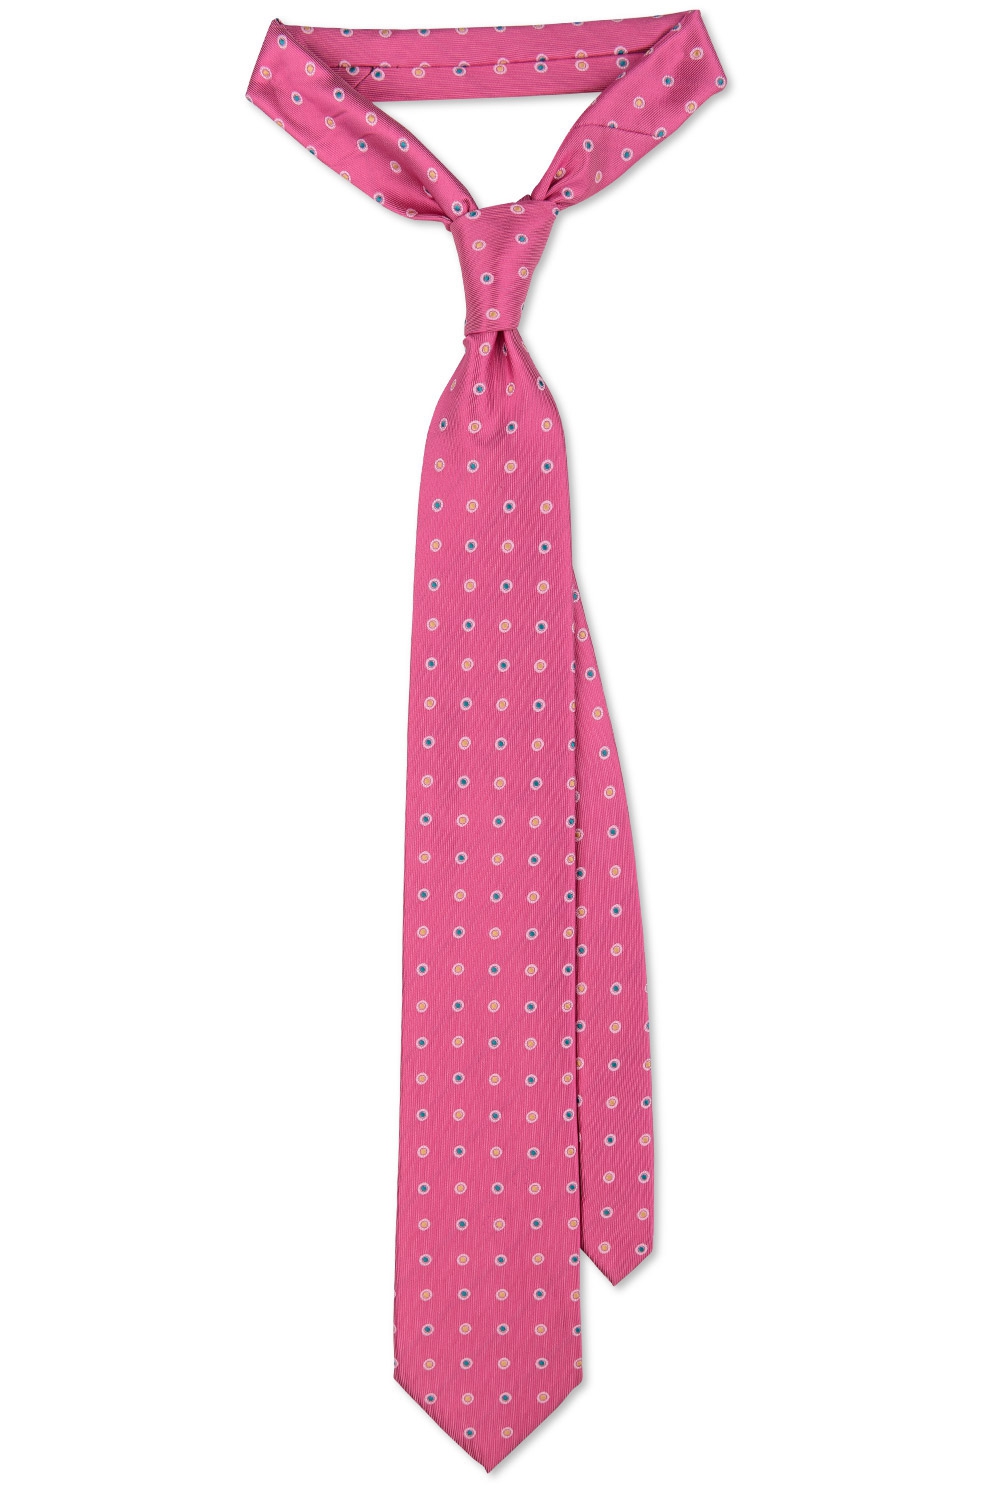 Cravata poliester roz cu buline 0